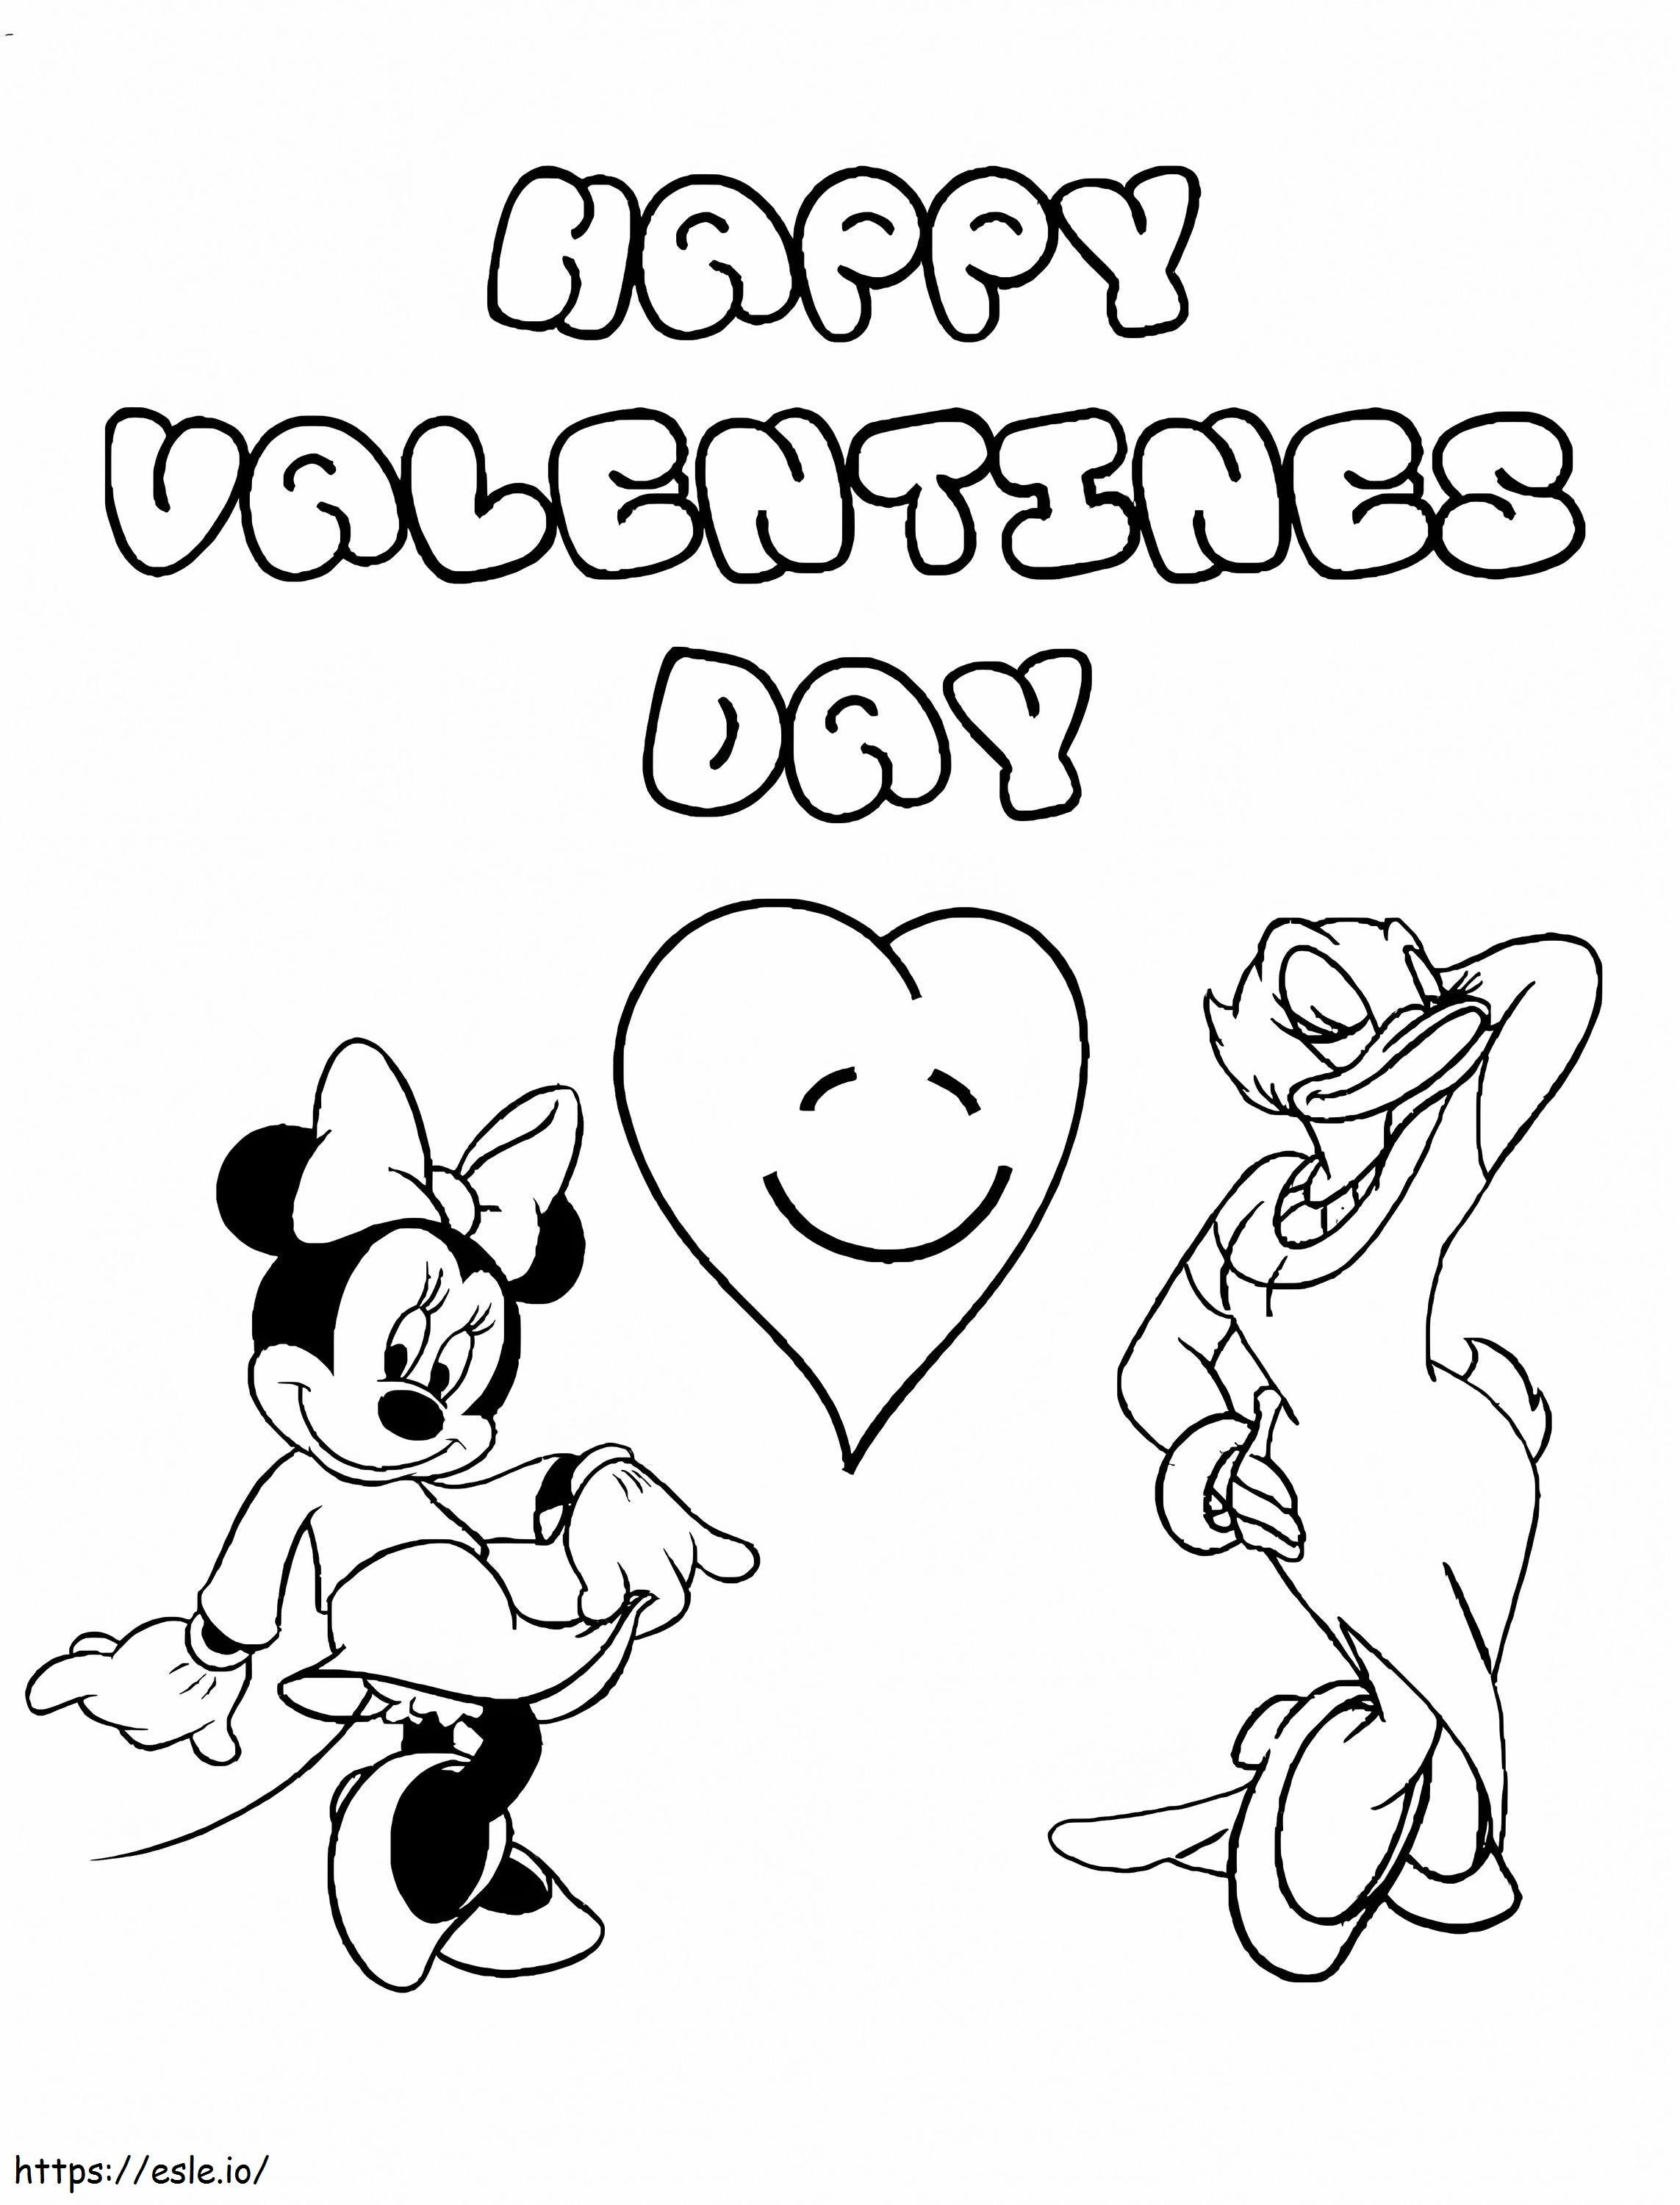 Paperina e Minnie Mouse Disney San Valentino da colorare